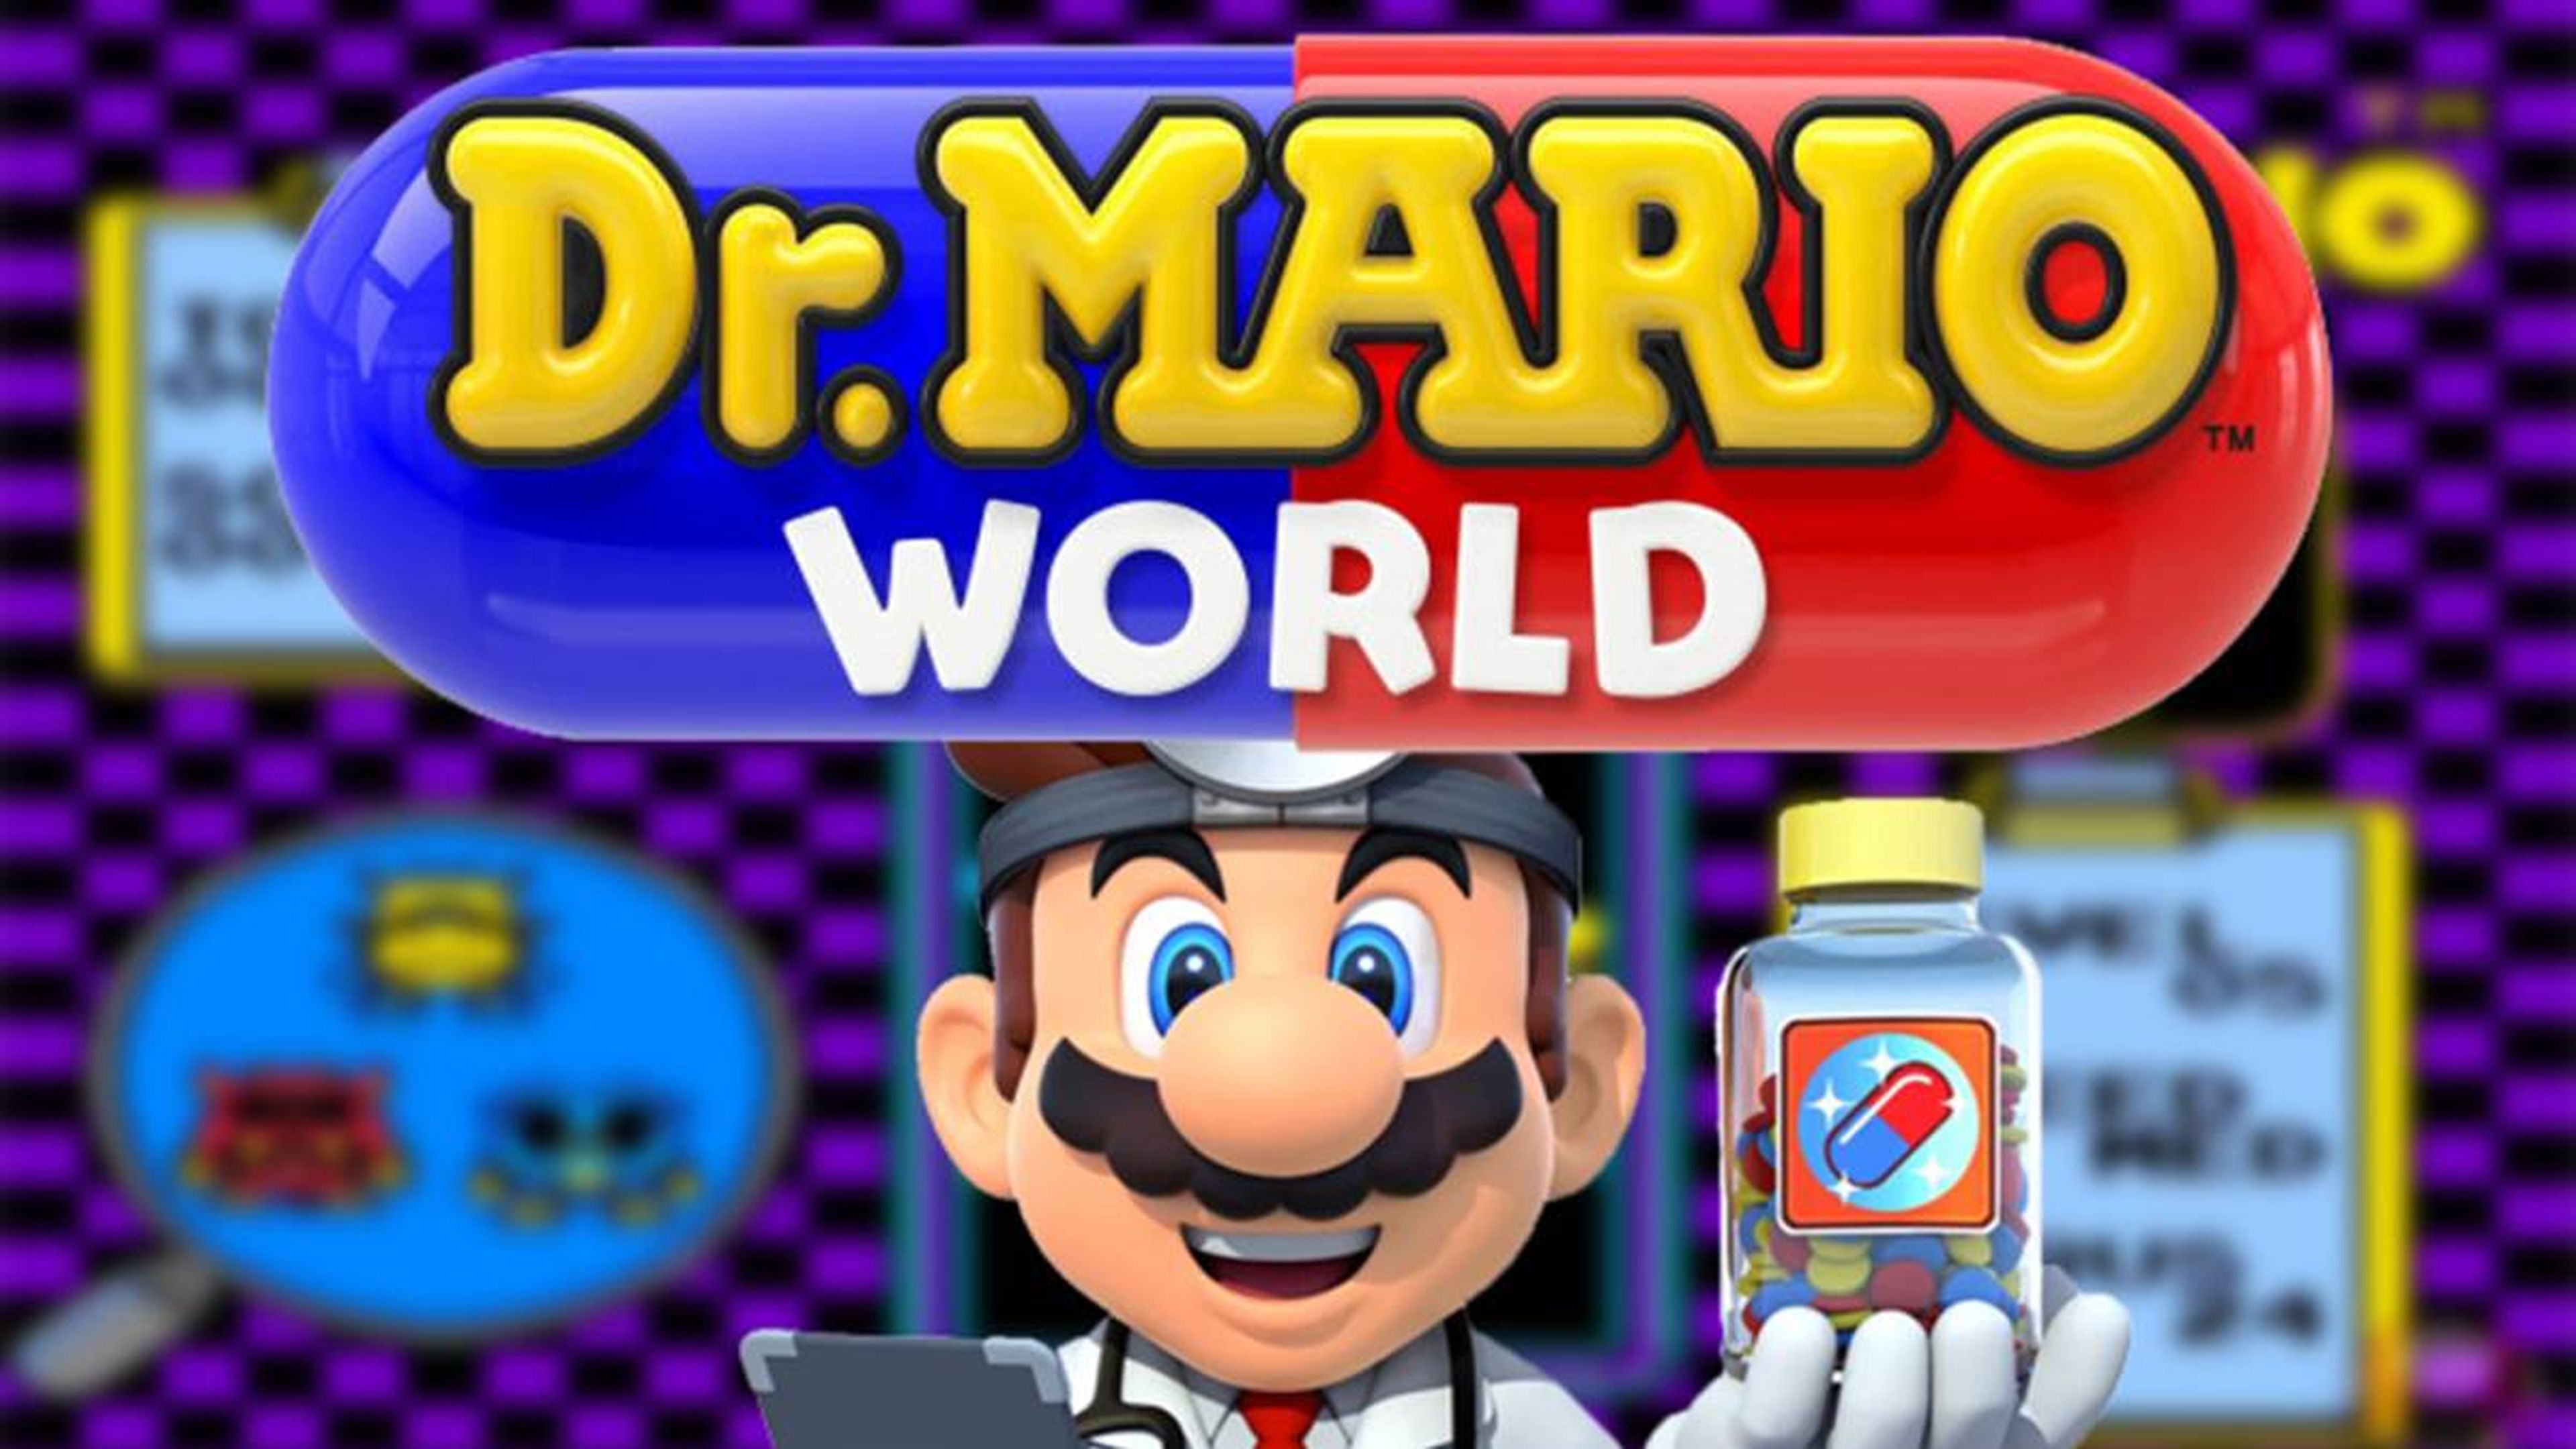 Dr. mario world